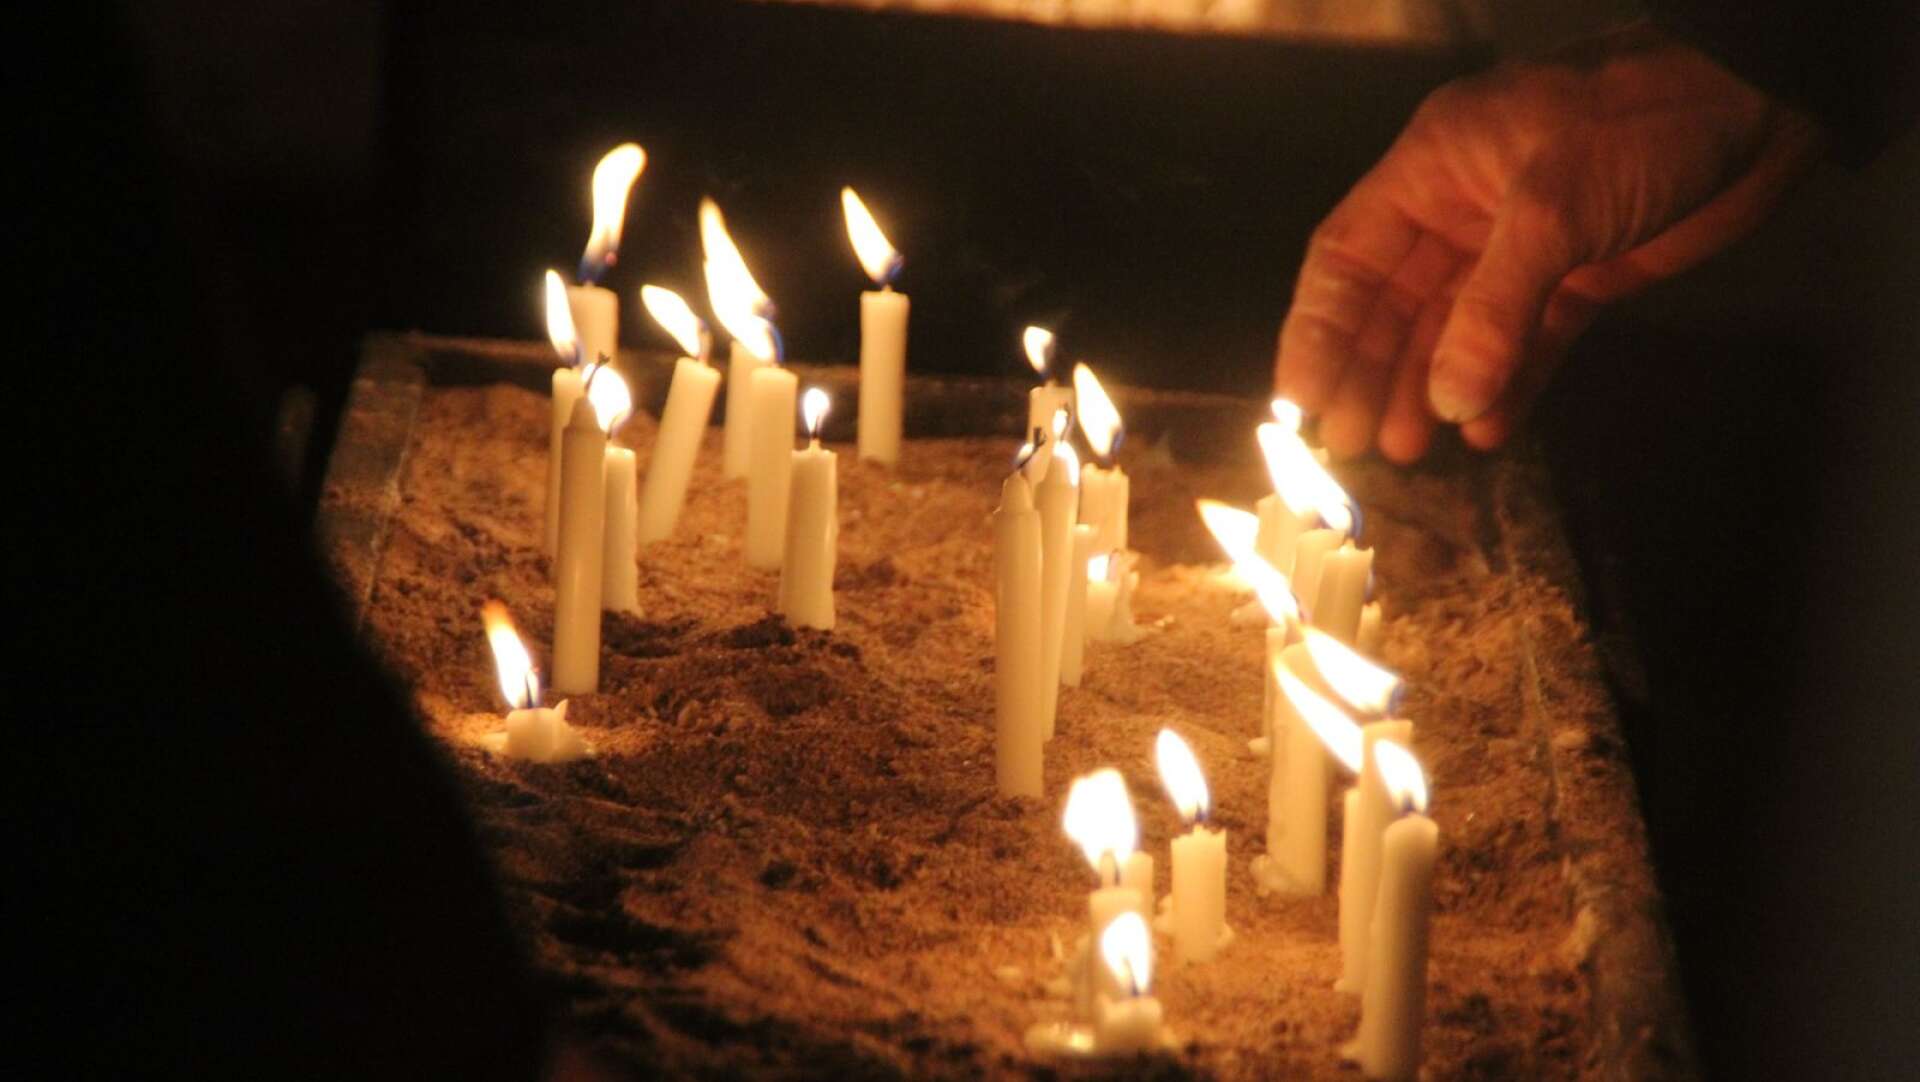 Att tända ljus till minne av någon var en uppskattad aktivitet i Grästorps pastorats tält.